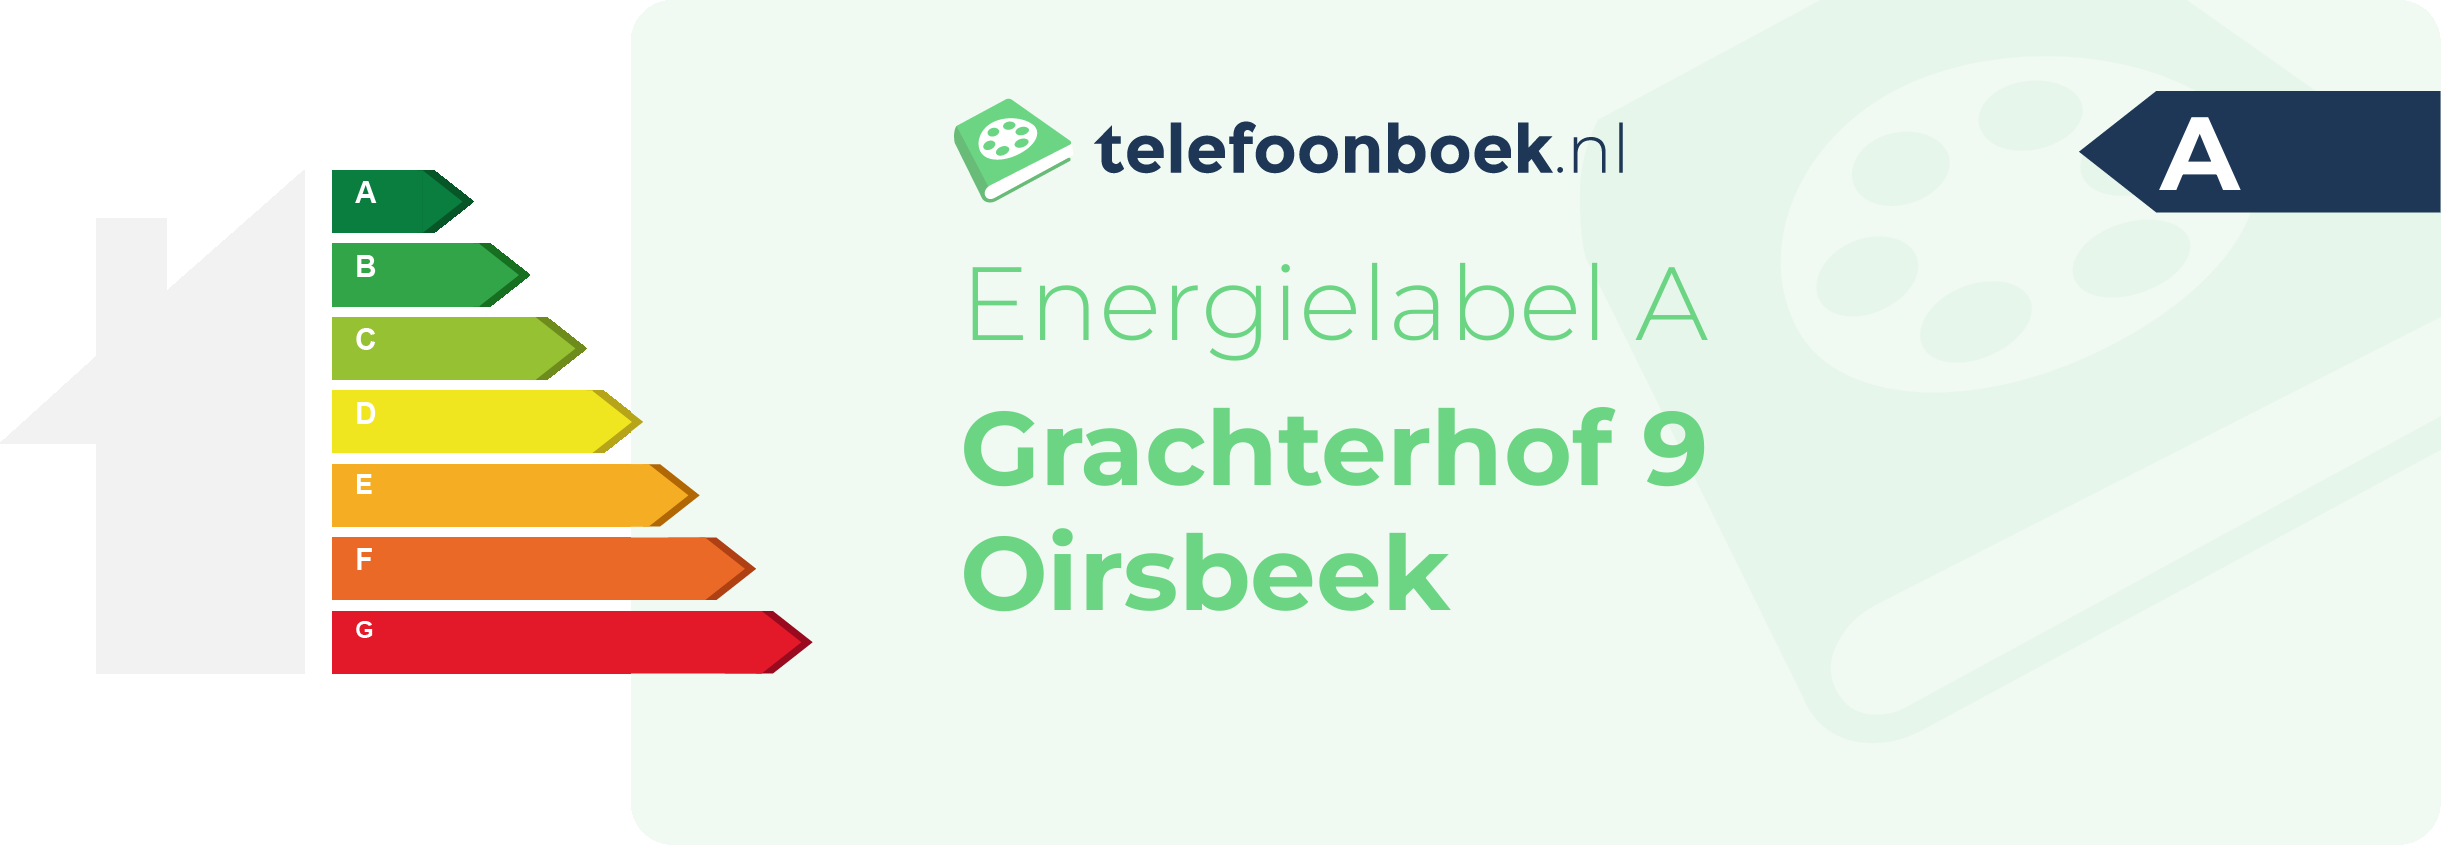 Energielabel Grachterhof 9 Oirsbeek